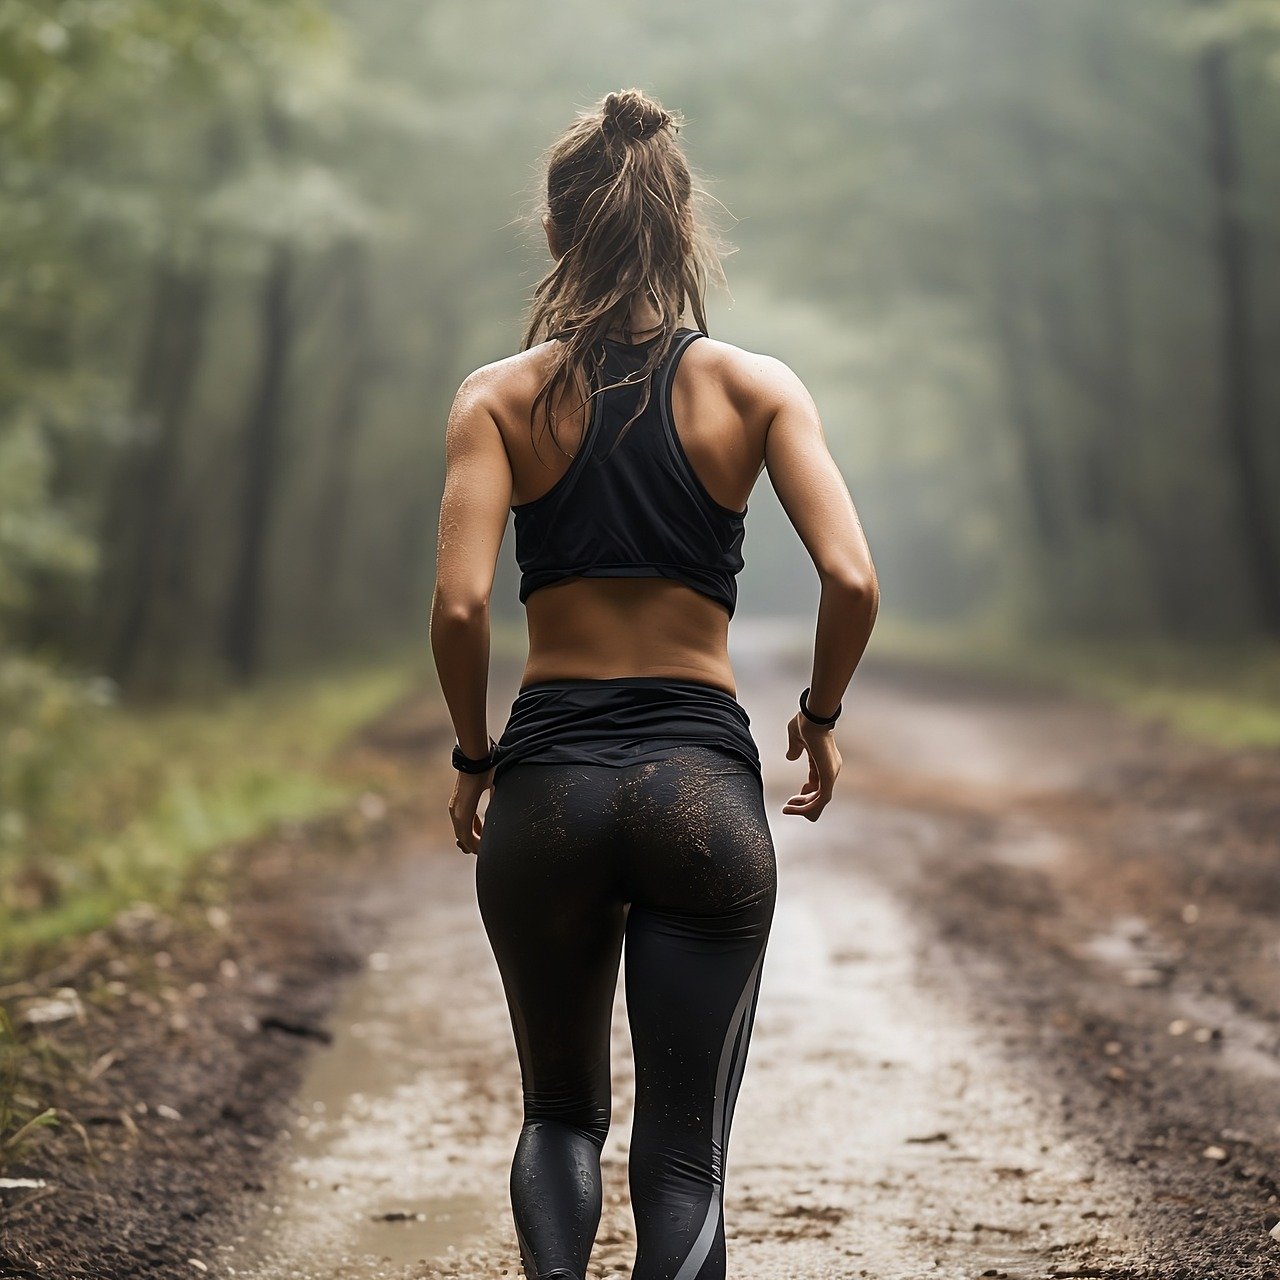 Woman trail running in sports wear